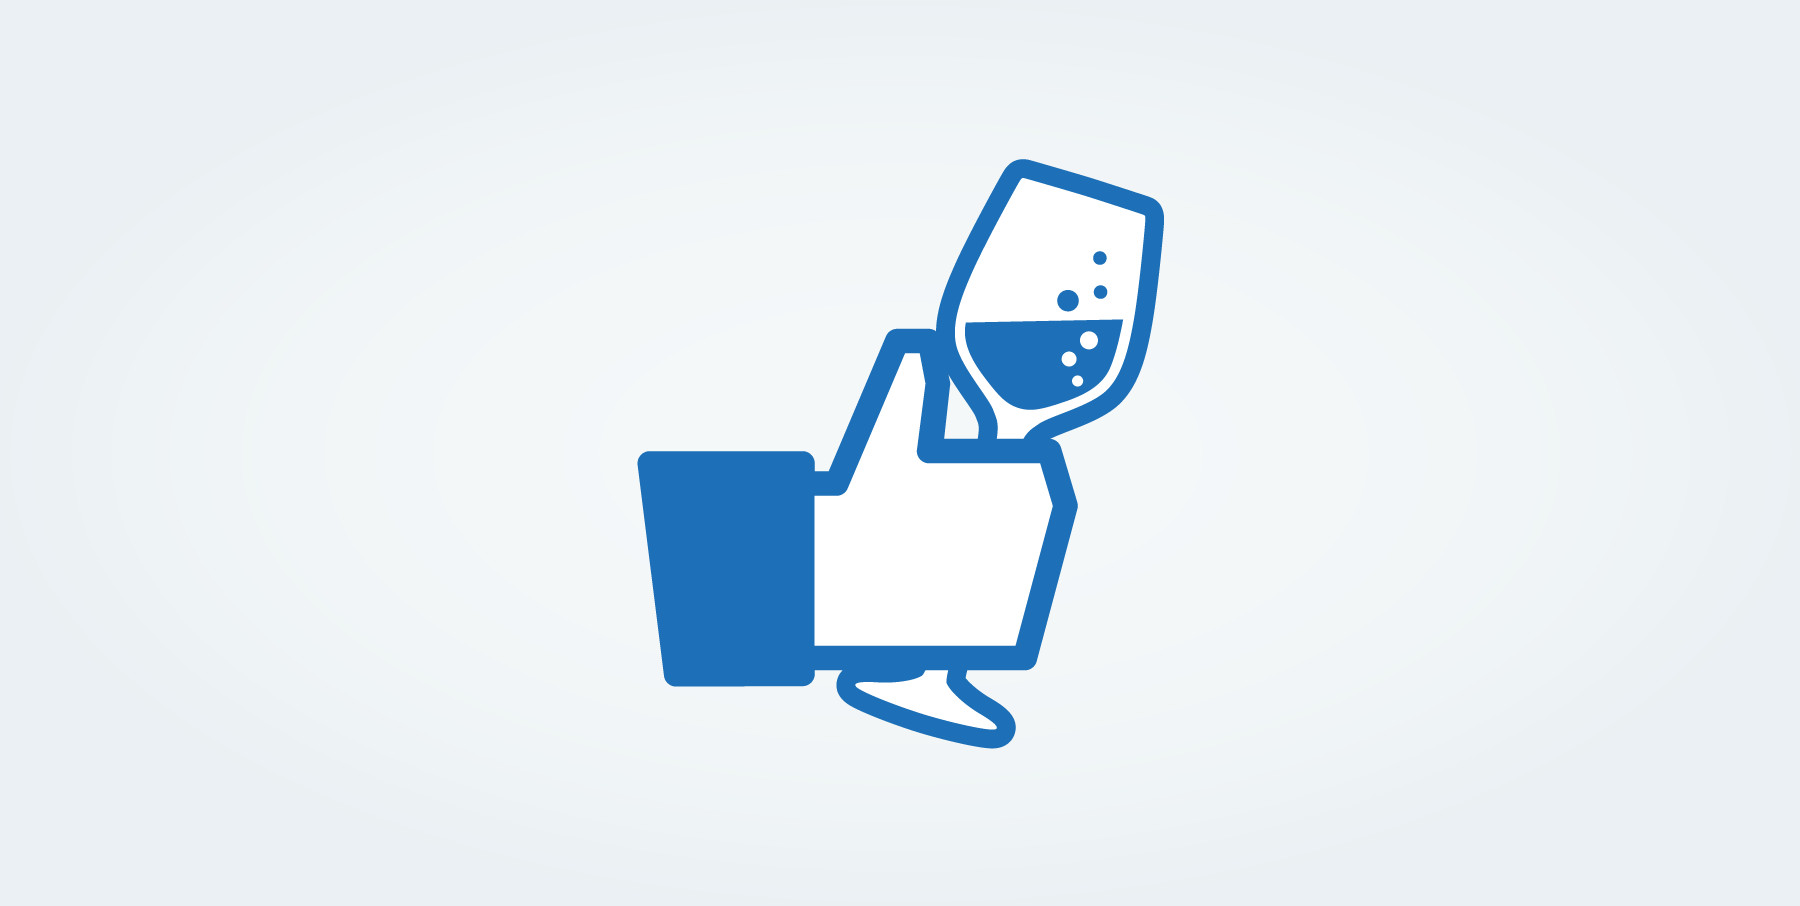 Wine on social media